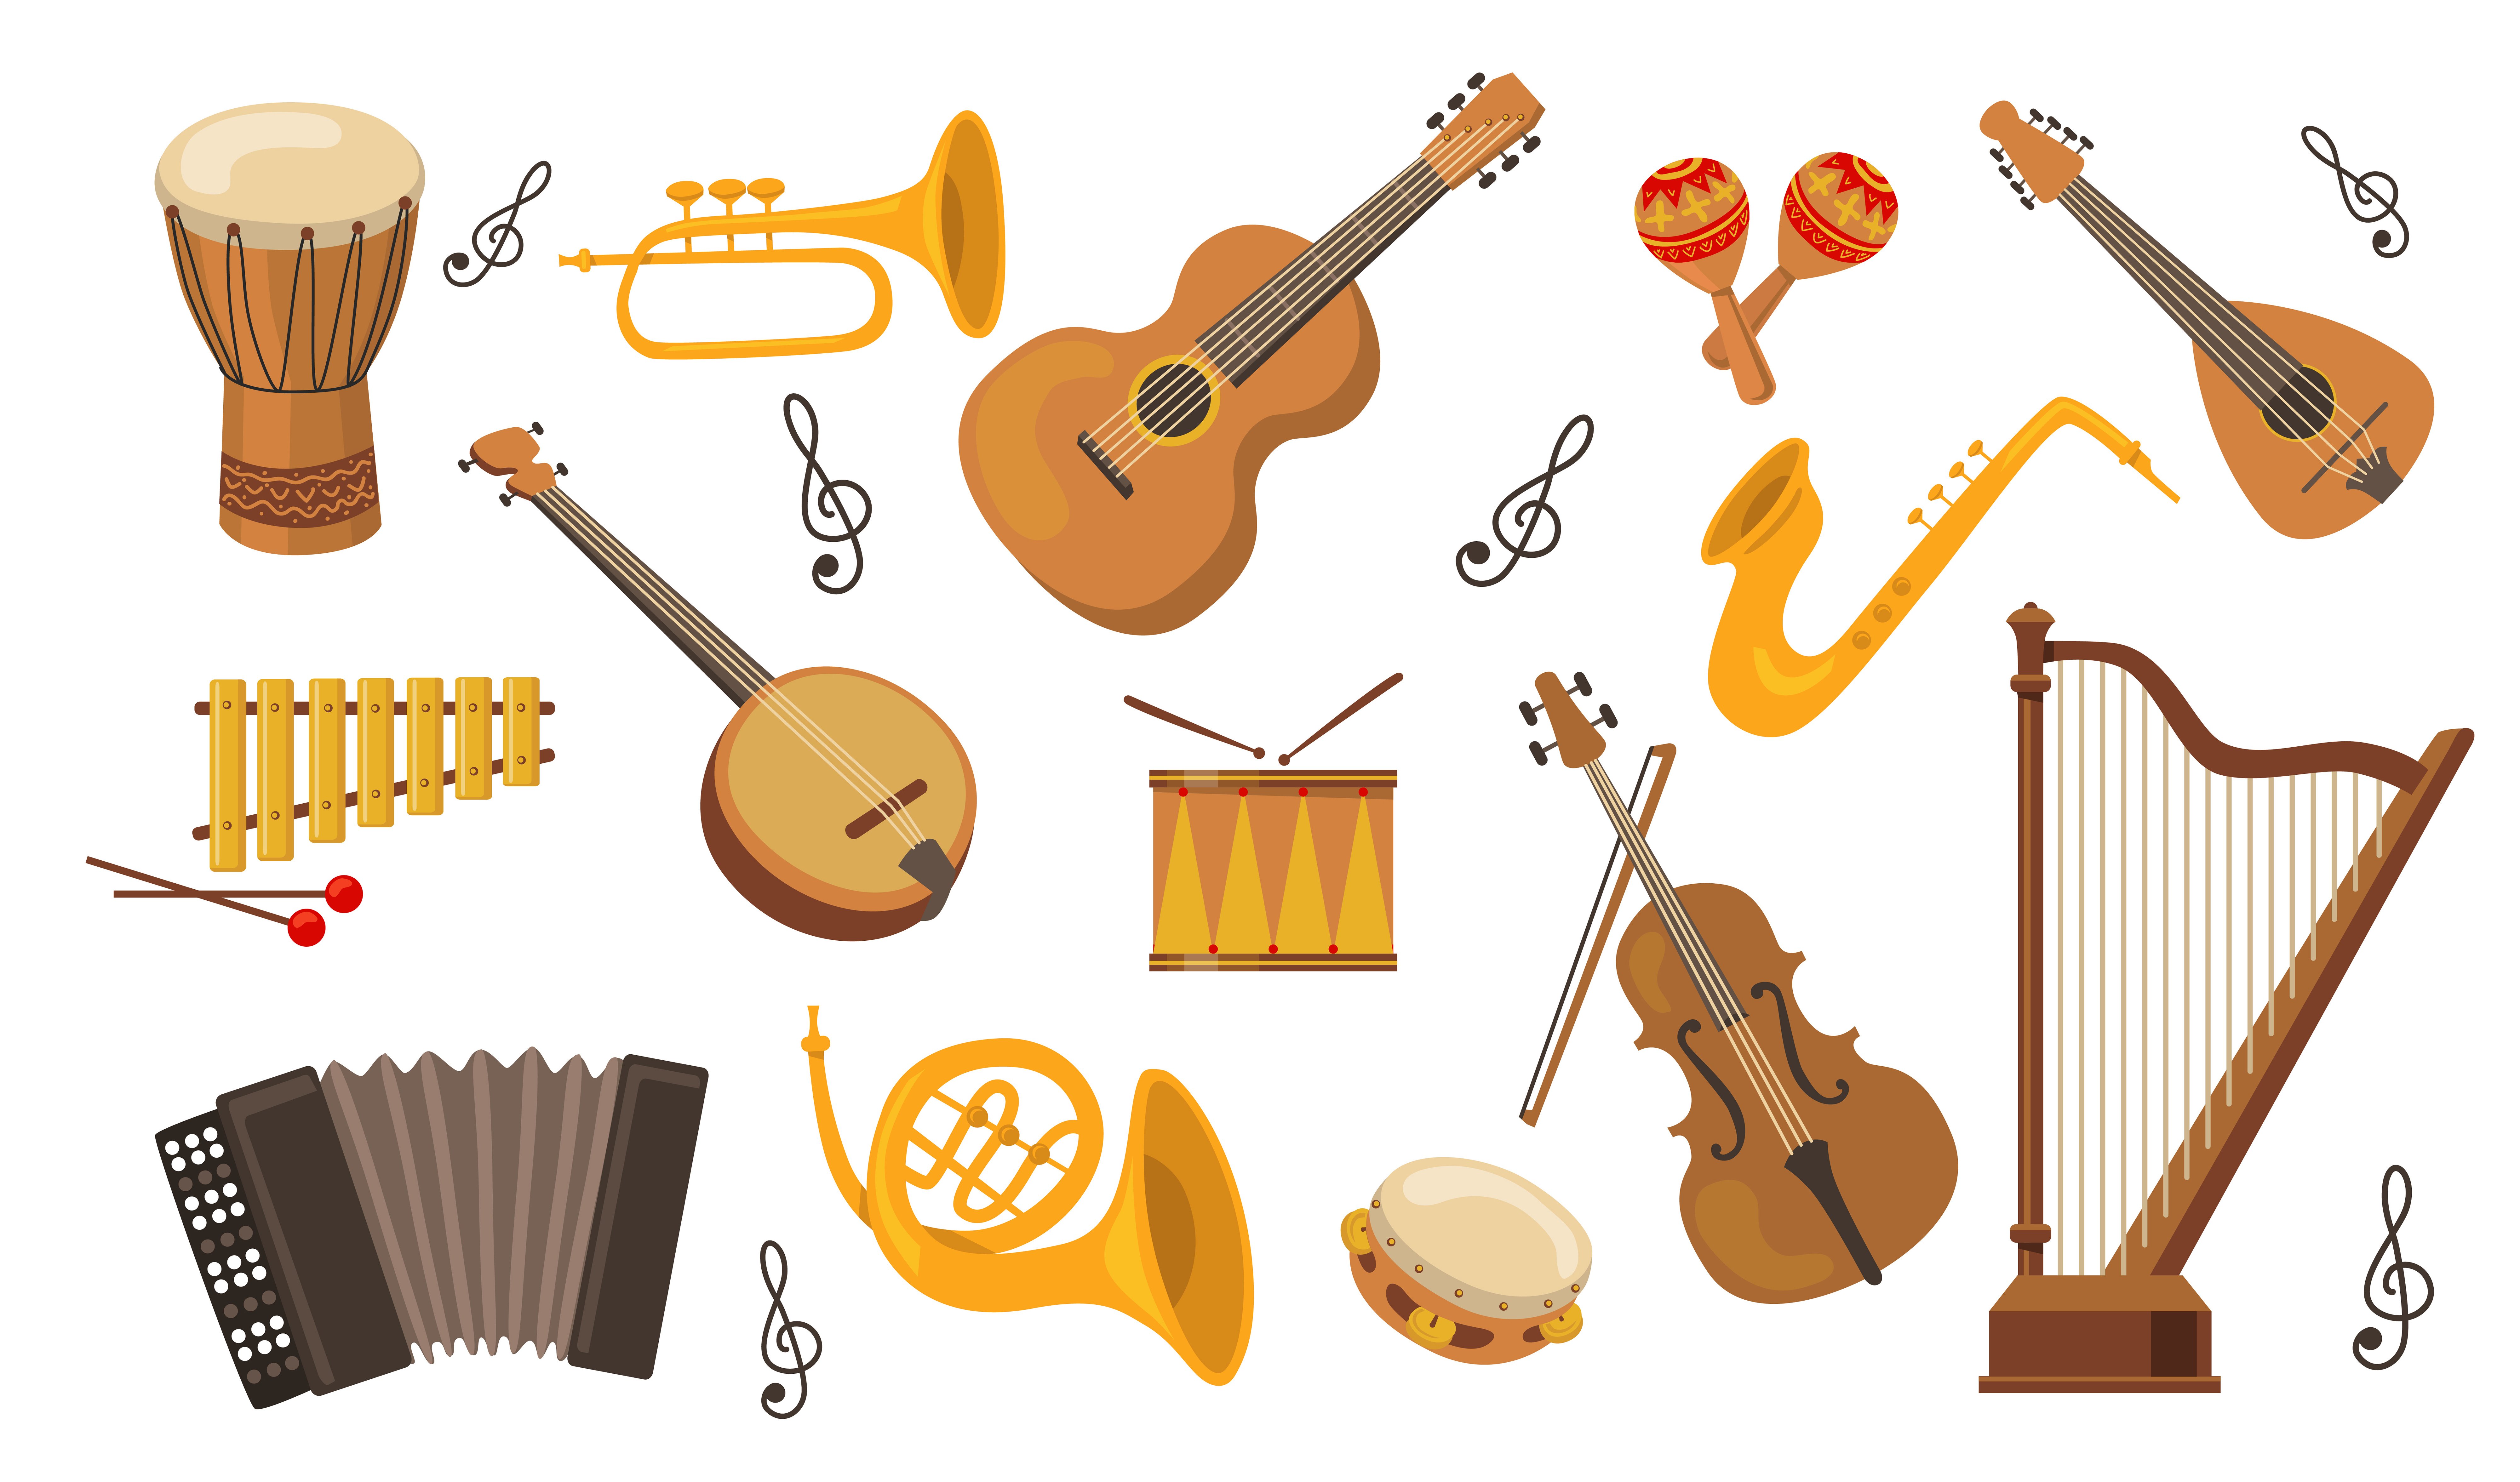 Музыкальный инструмент на д. Музыкальные инструменты иллюстрации. Музыкальные инструменты для малышей. Изображение музыкальных инструментов для детей. Классические музыкальные инструменты.